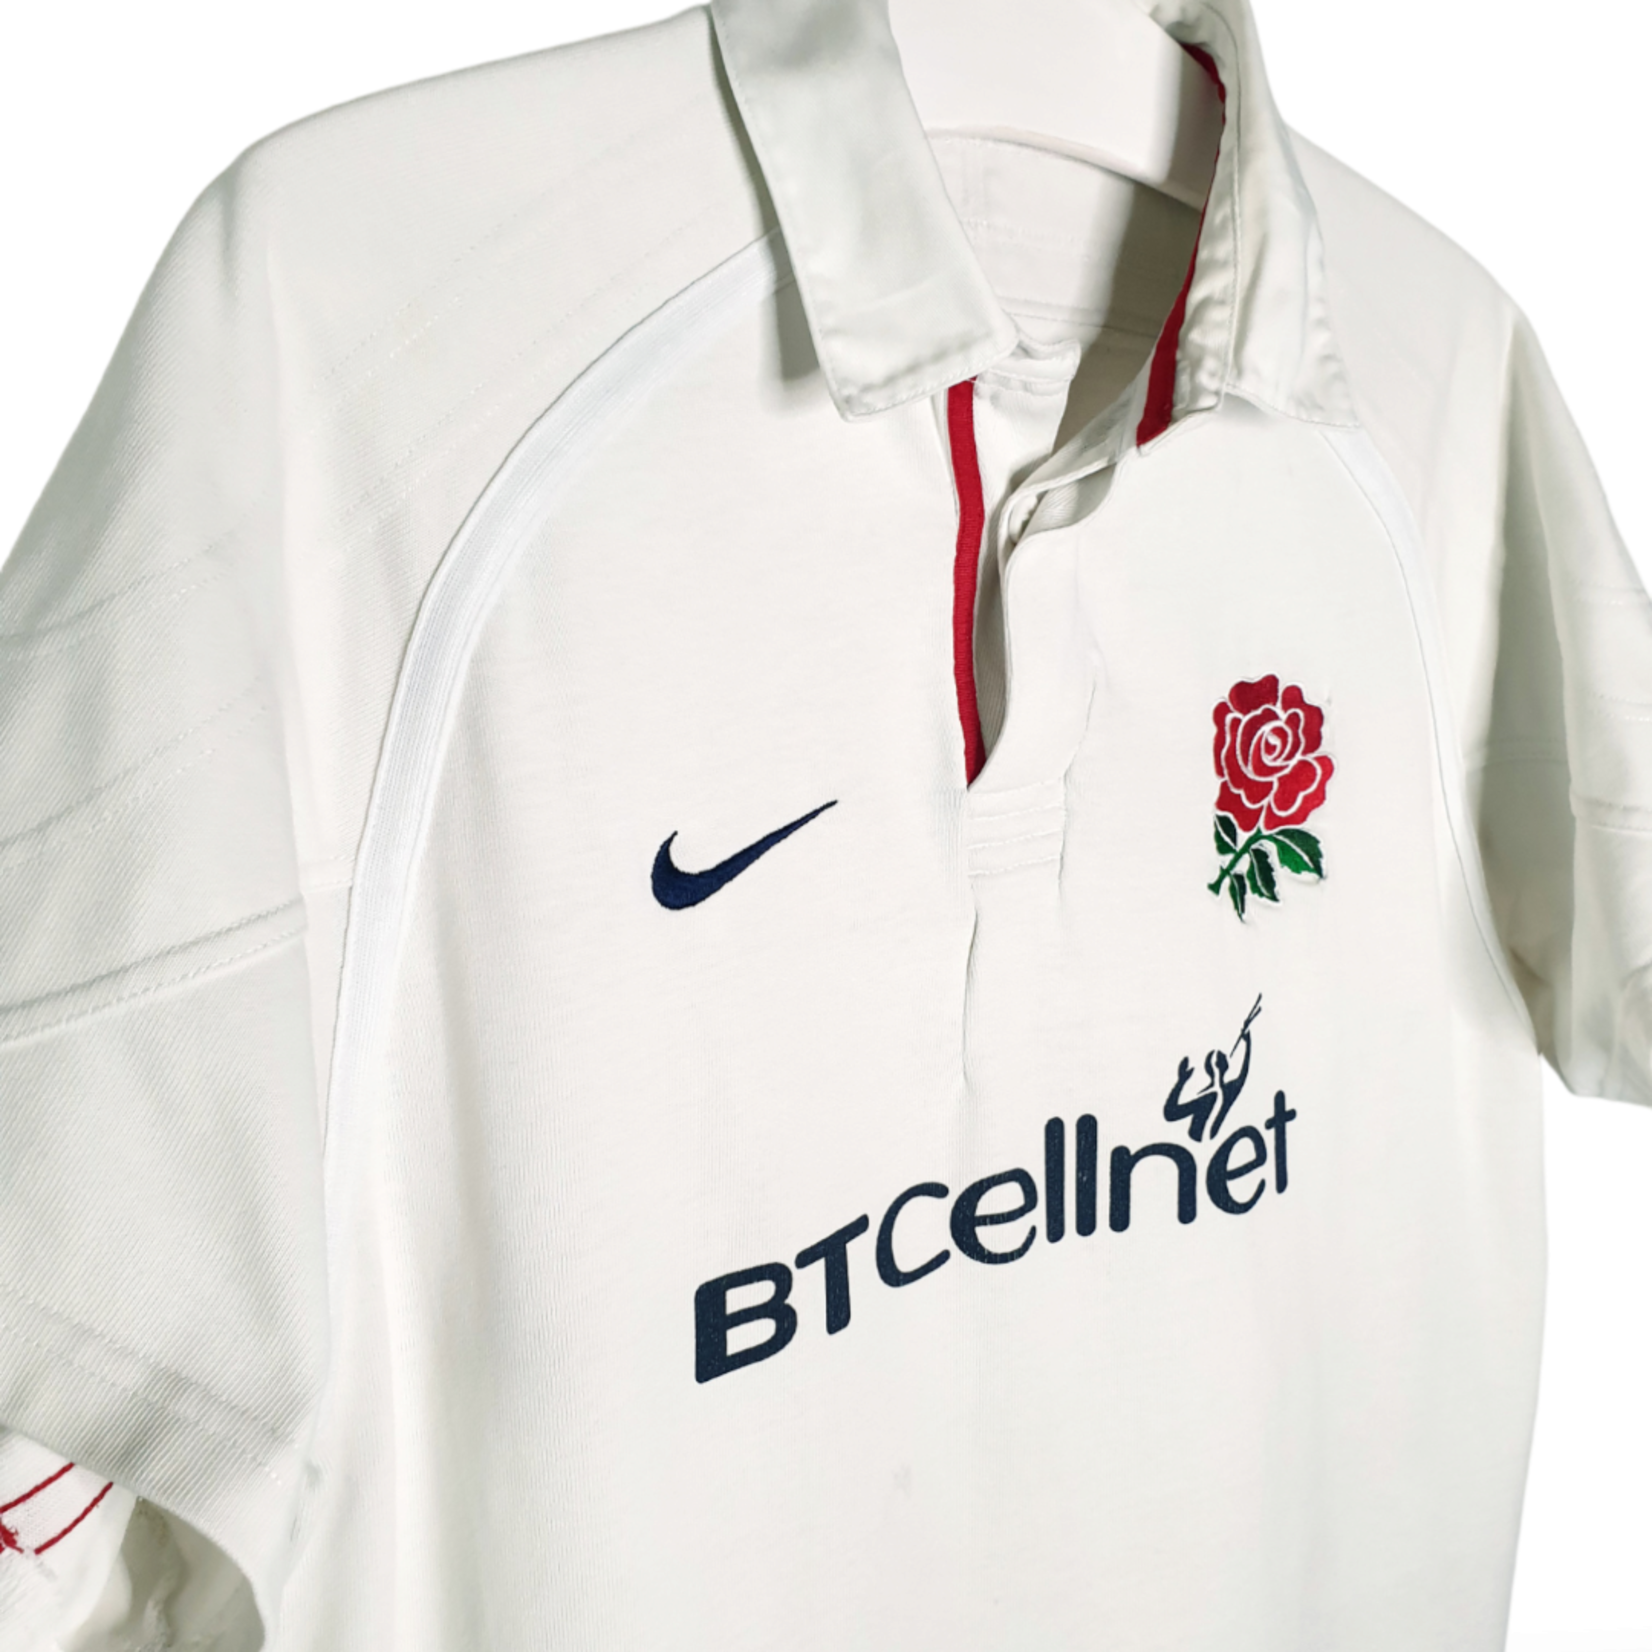 Nike Origineel Nike vintage rugby shirt Engeland 2001